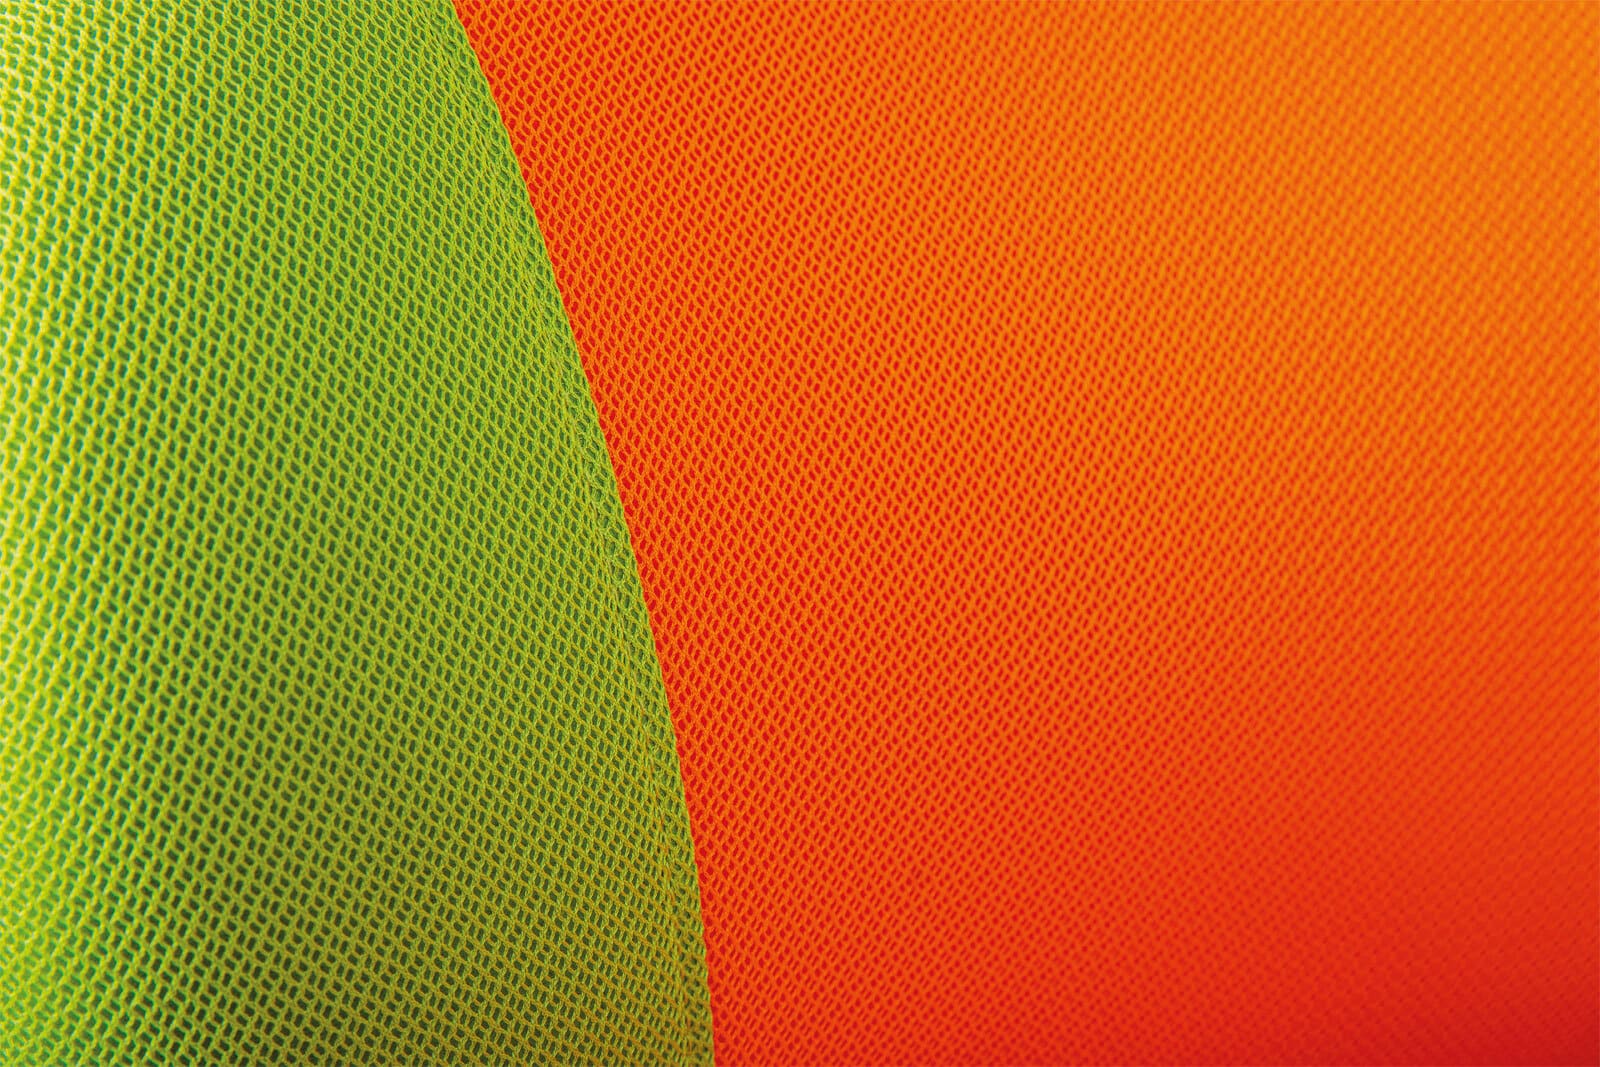 CASAVANTI Kinderstuhl JEREMY orange/grün 52 x 92-102 x 56 cm